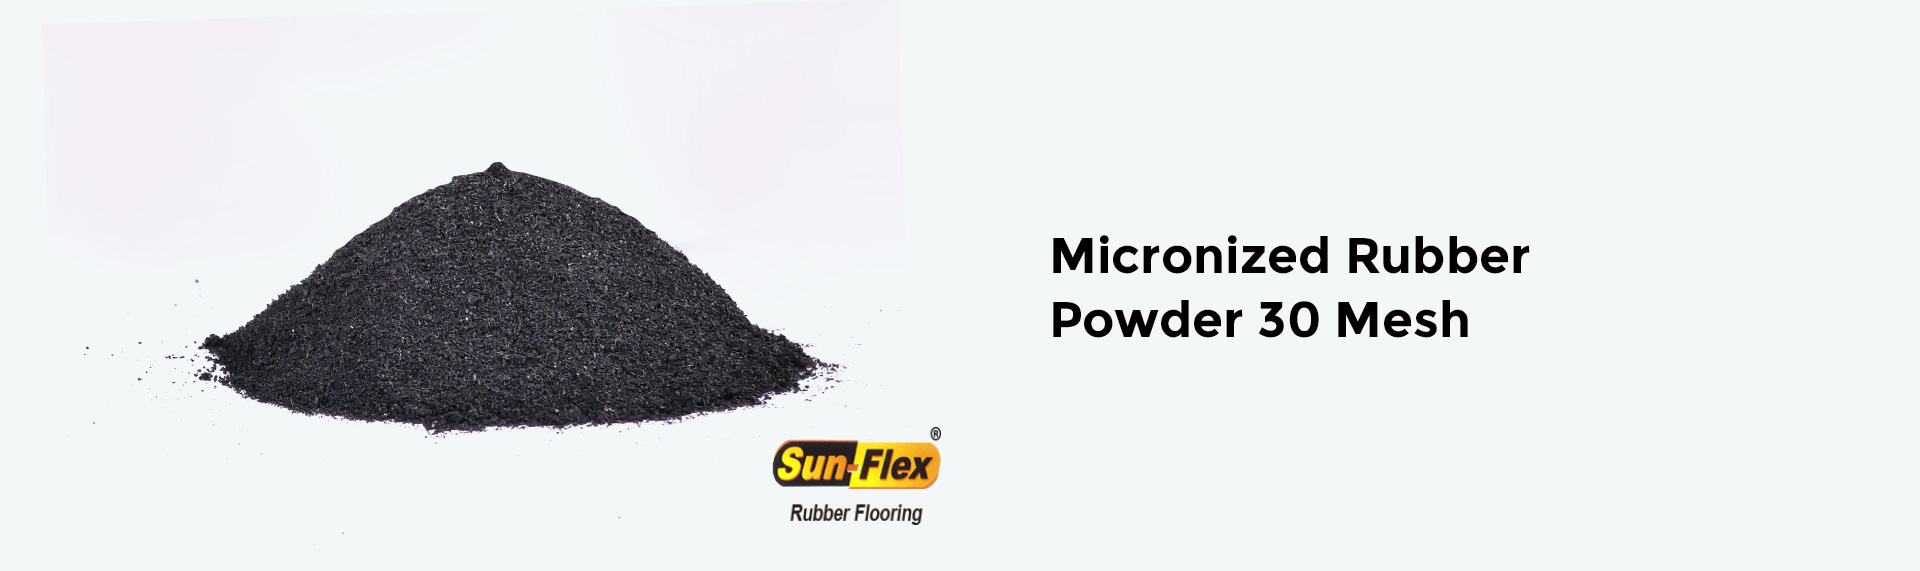 Micronized-Rubber-Powder-30-Mesh